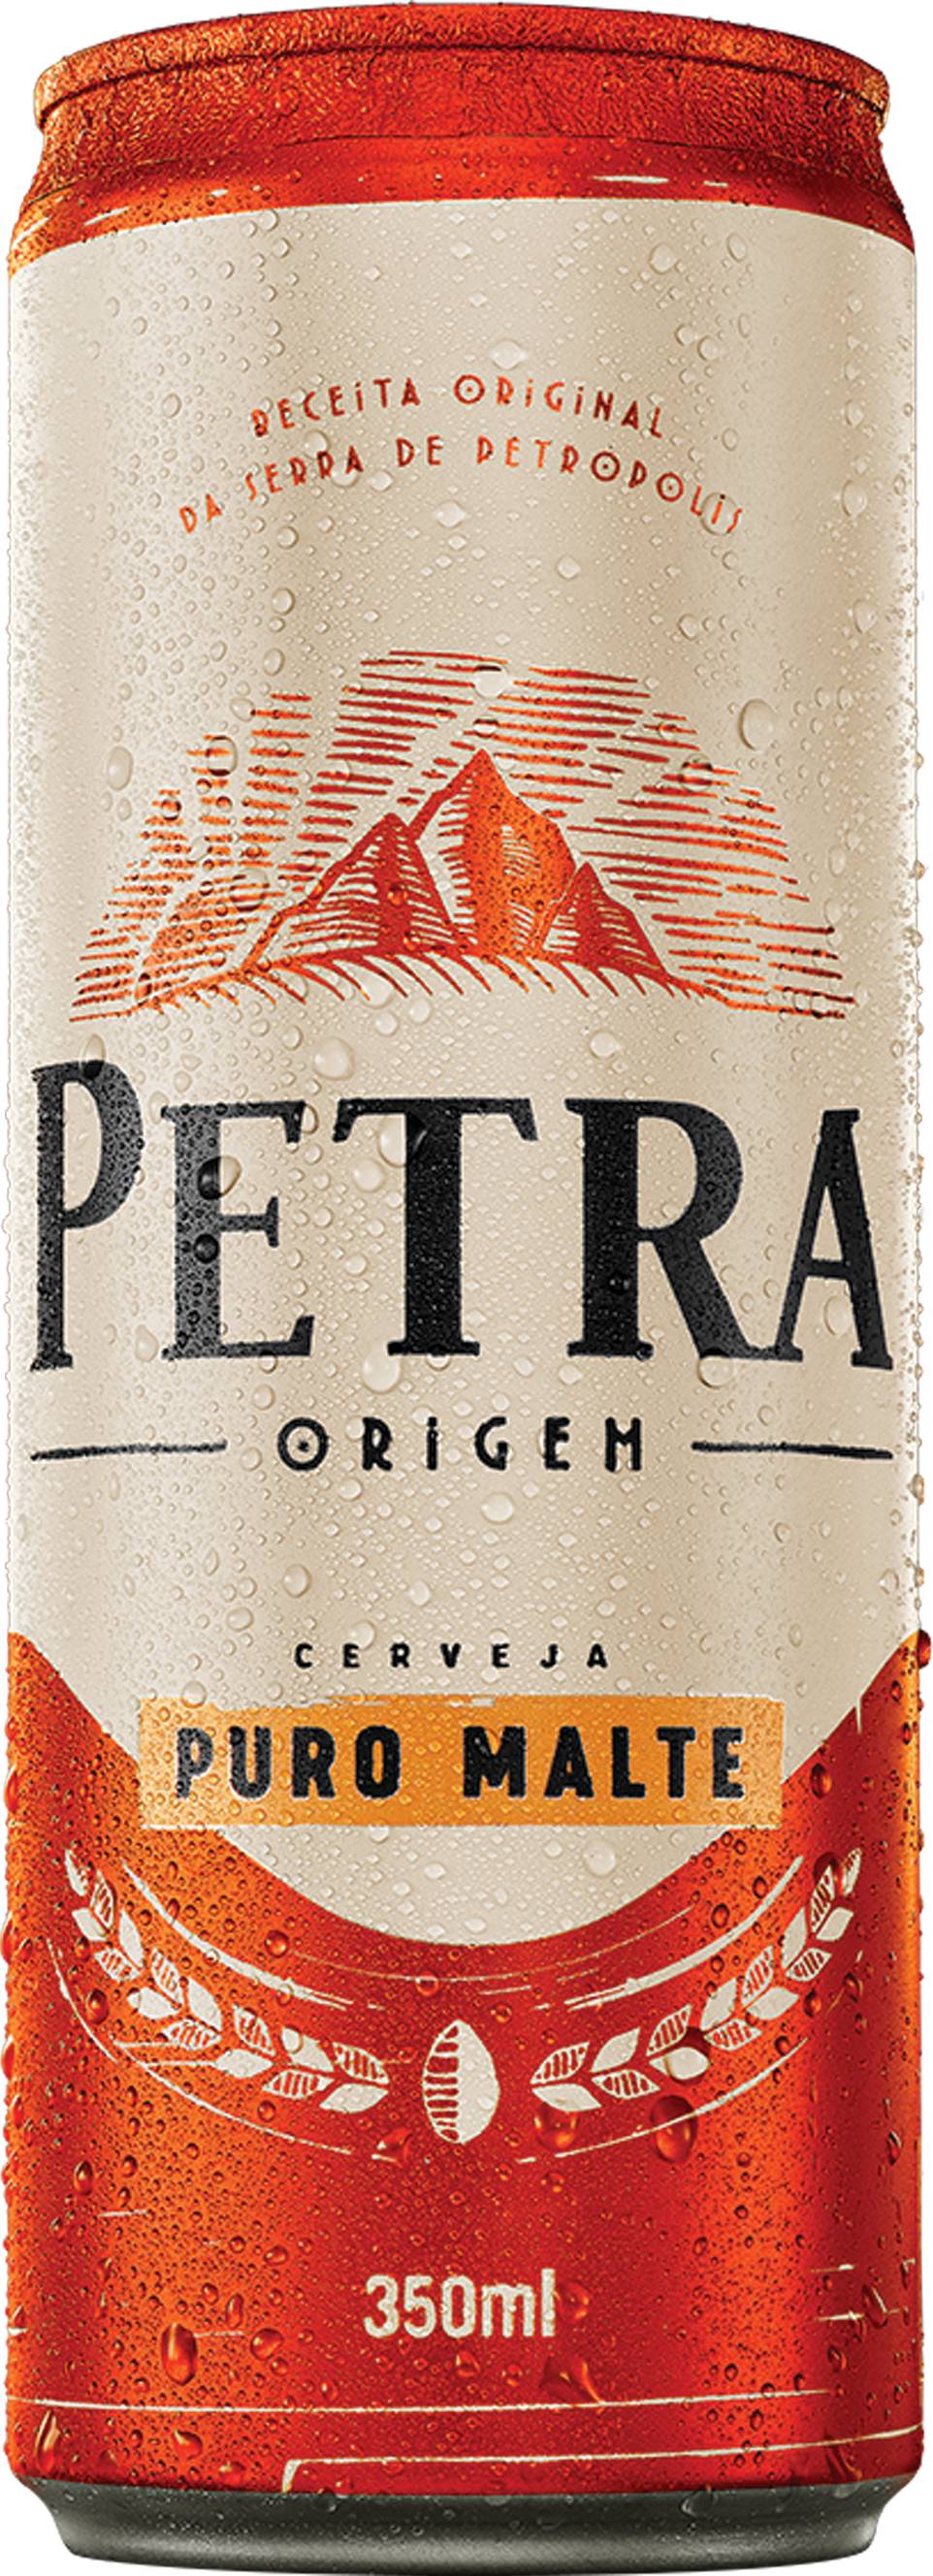 Petra cerveja origem puro malte (350 mL)